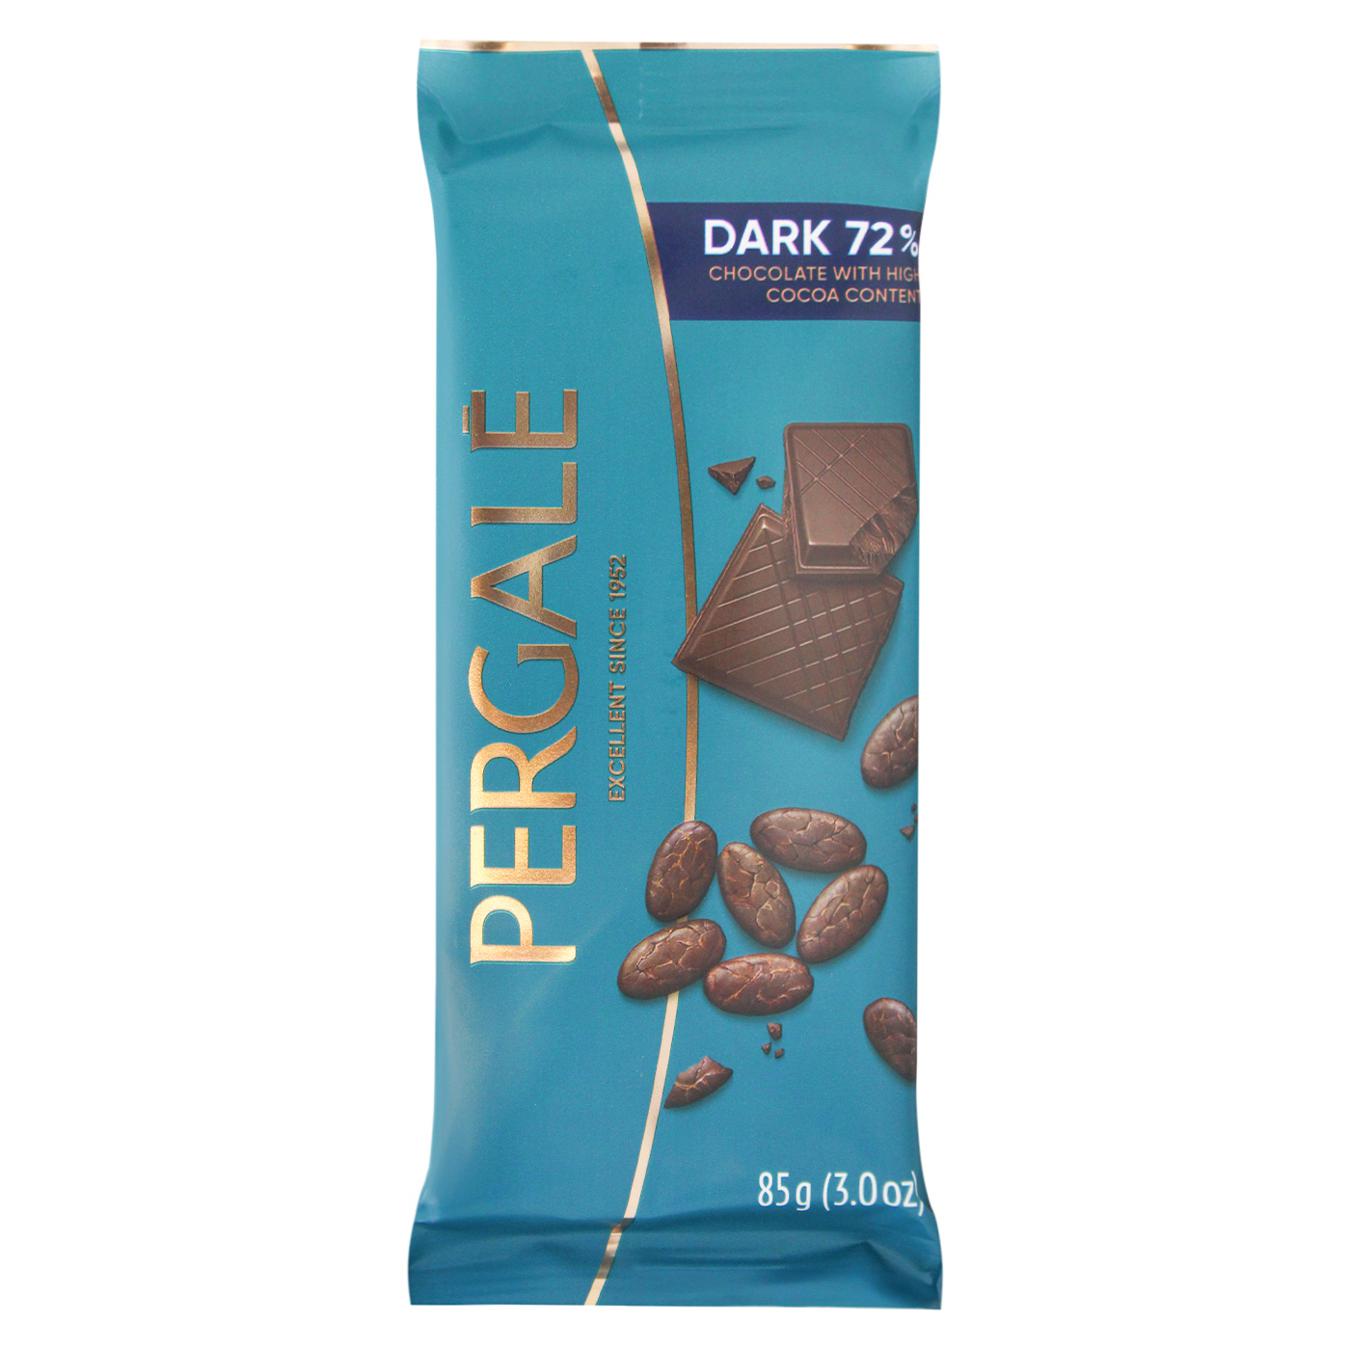 Chocolate Pergale black 72% 85g